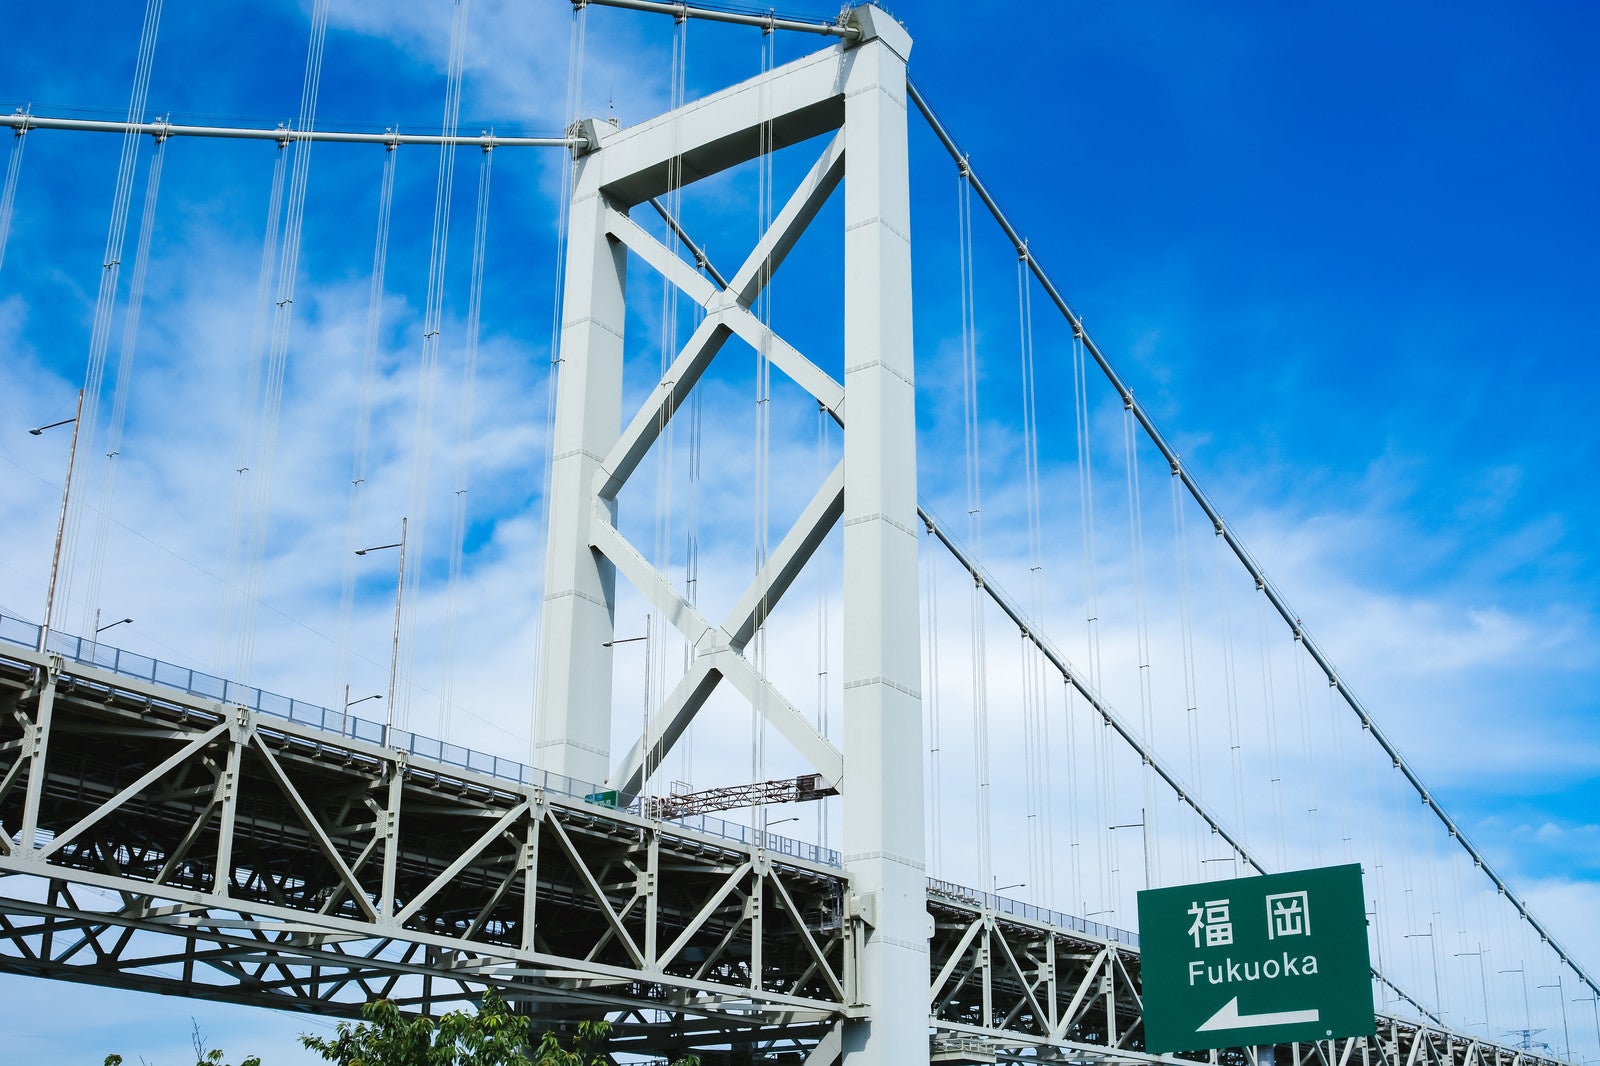 「関門橋と案内看板、福岡はあちらです」の写真